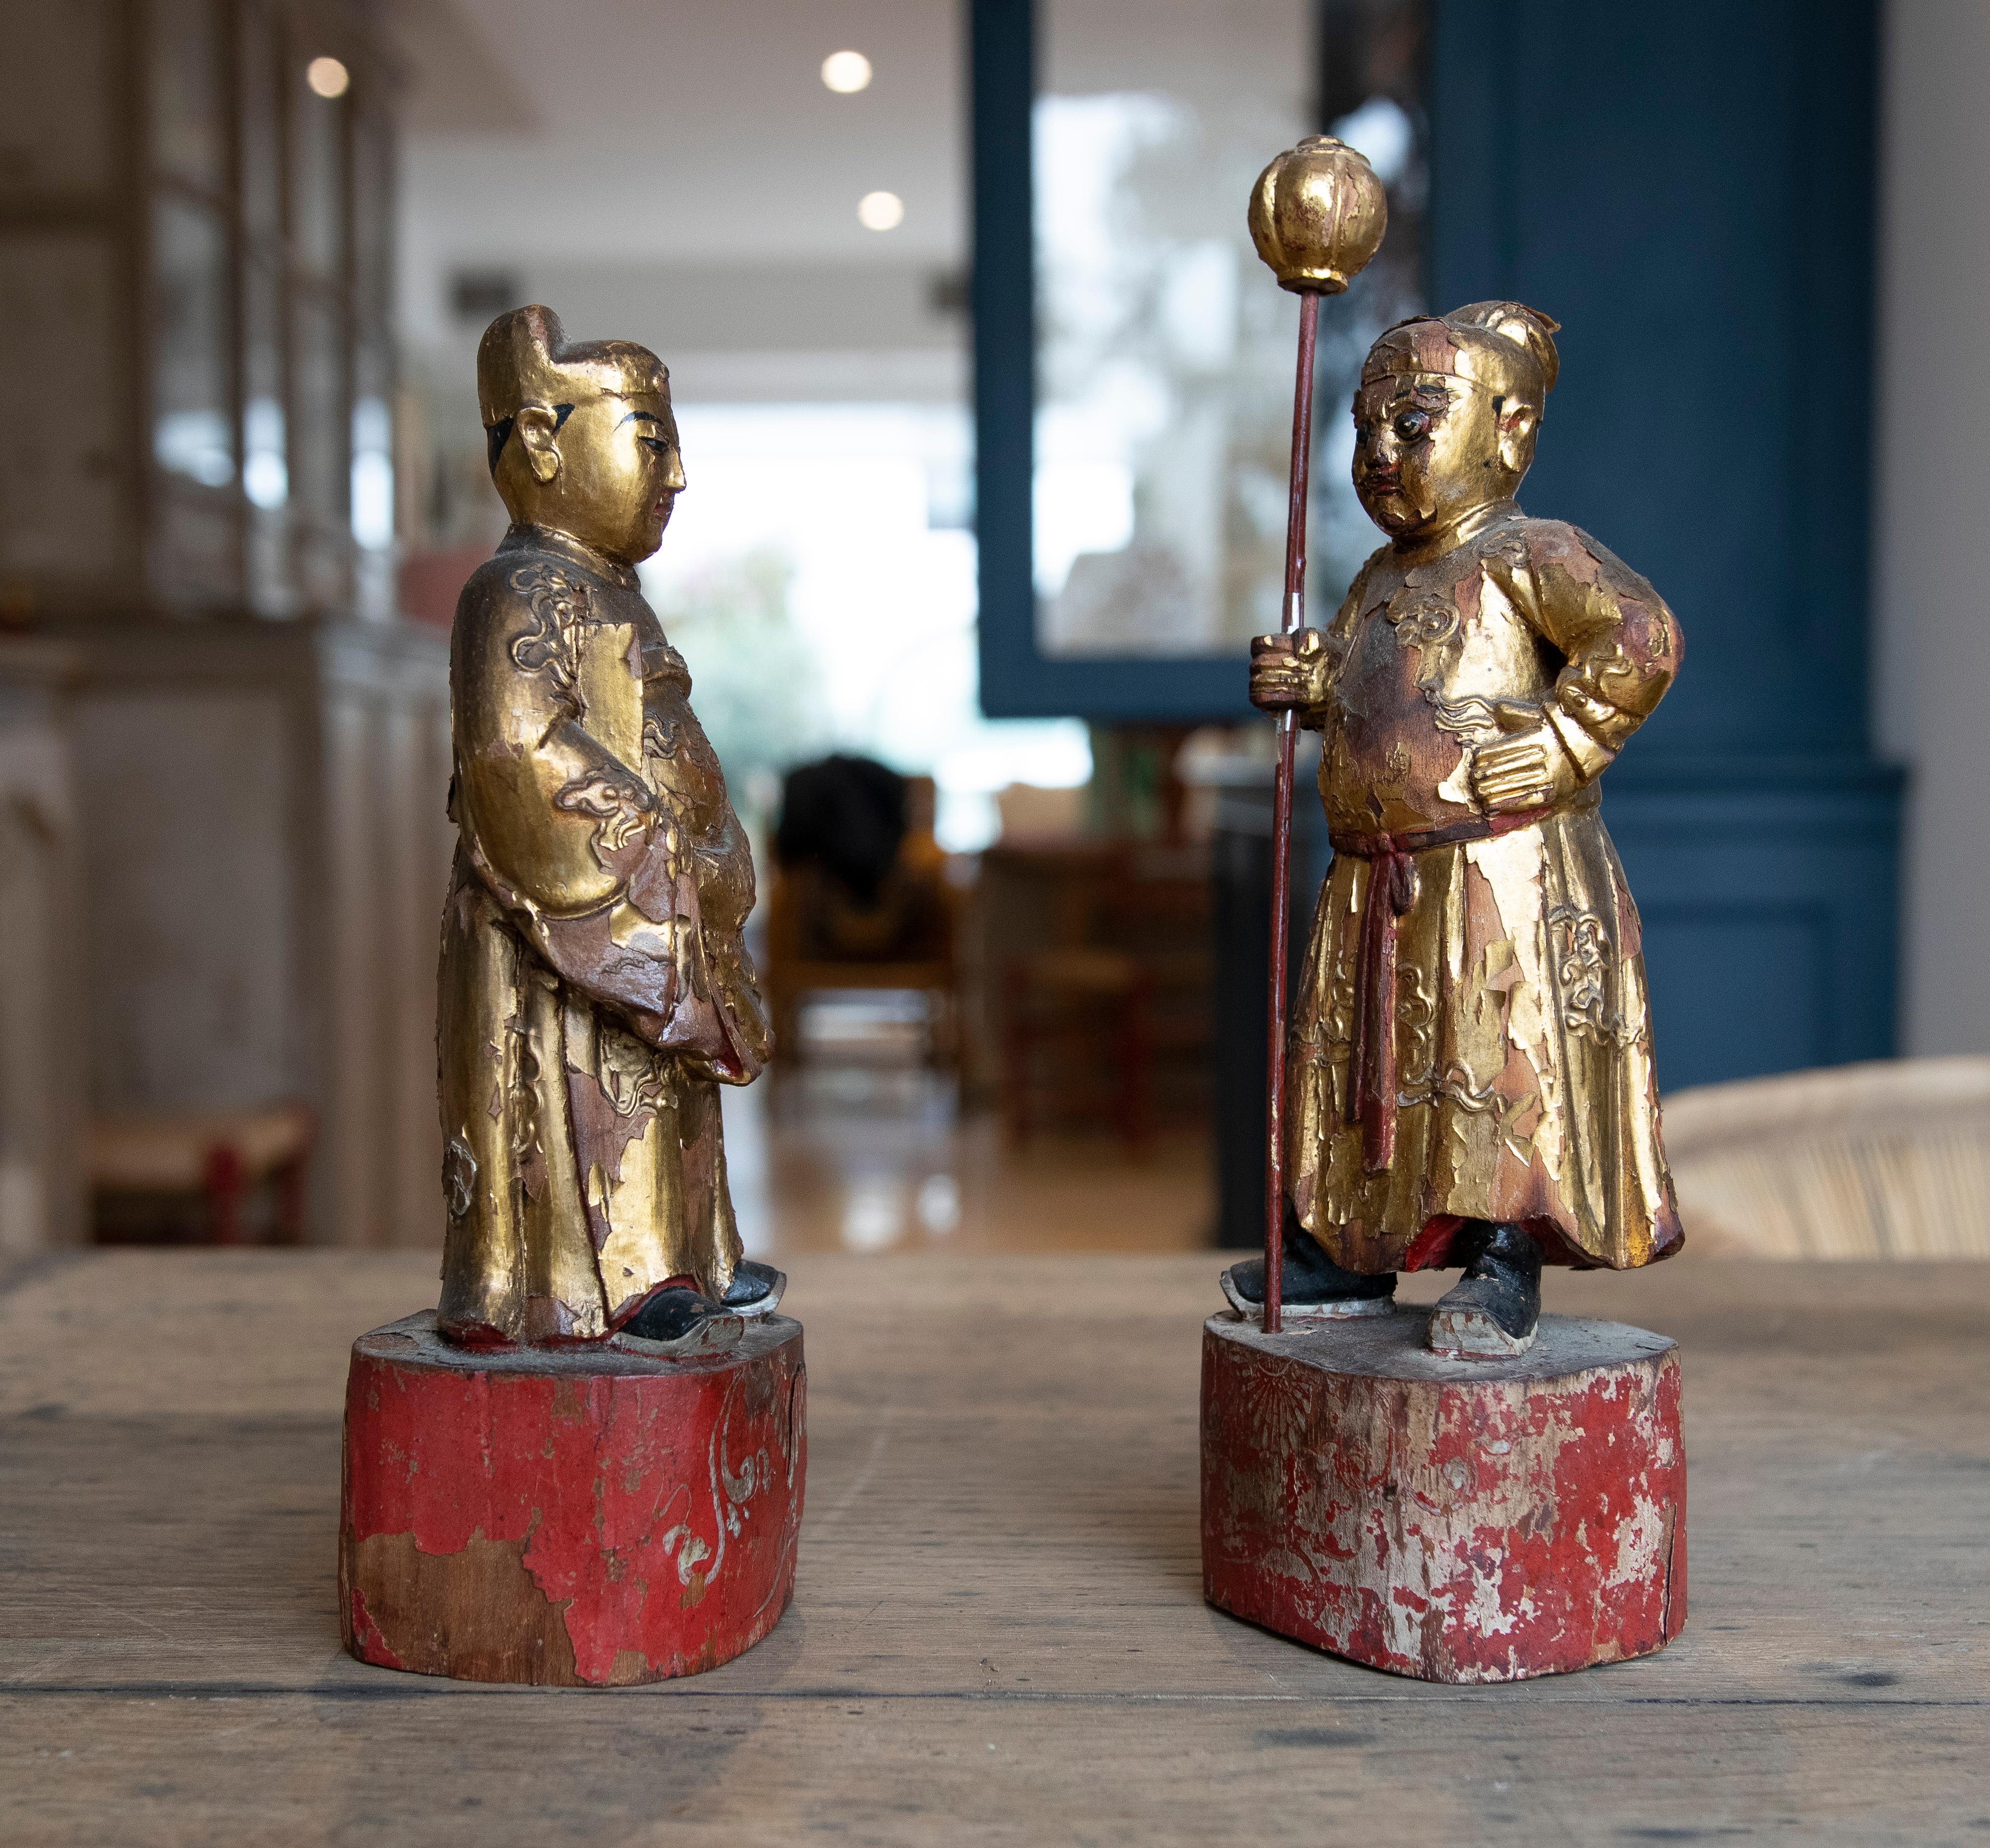 Chinesisches Paar aus Holz geschnitzt und polychrome Skulpturen von chinesischen Kriegern.